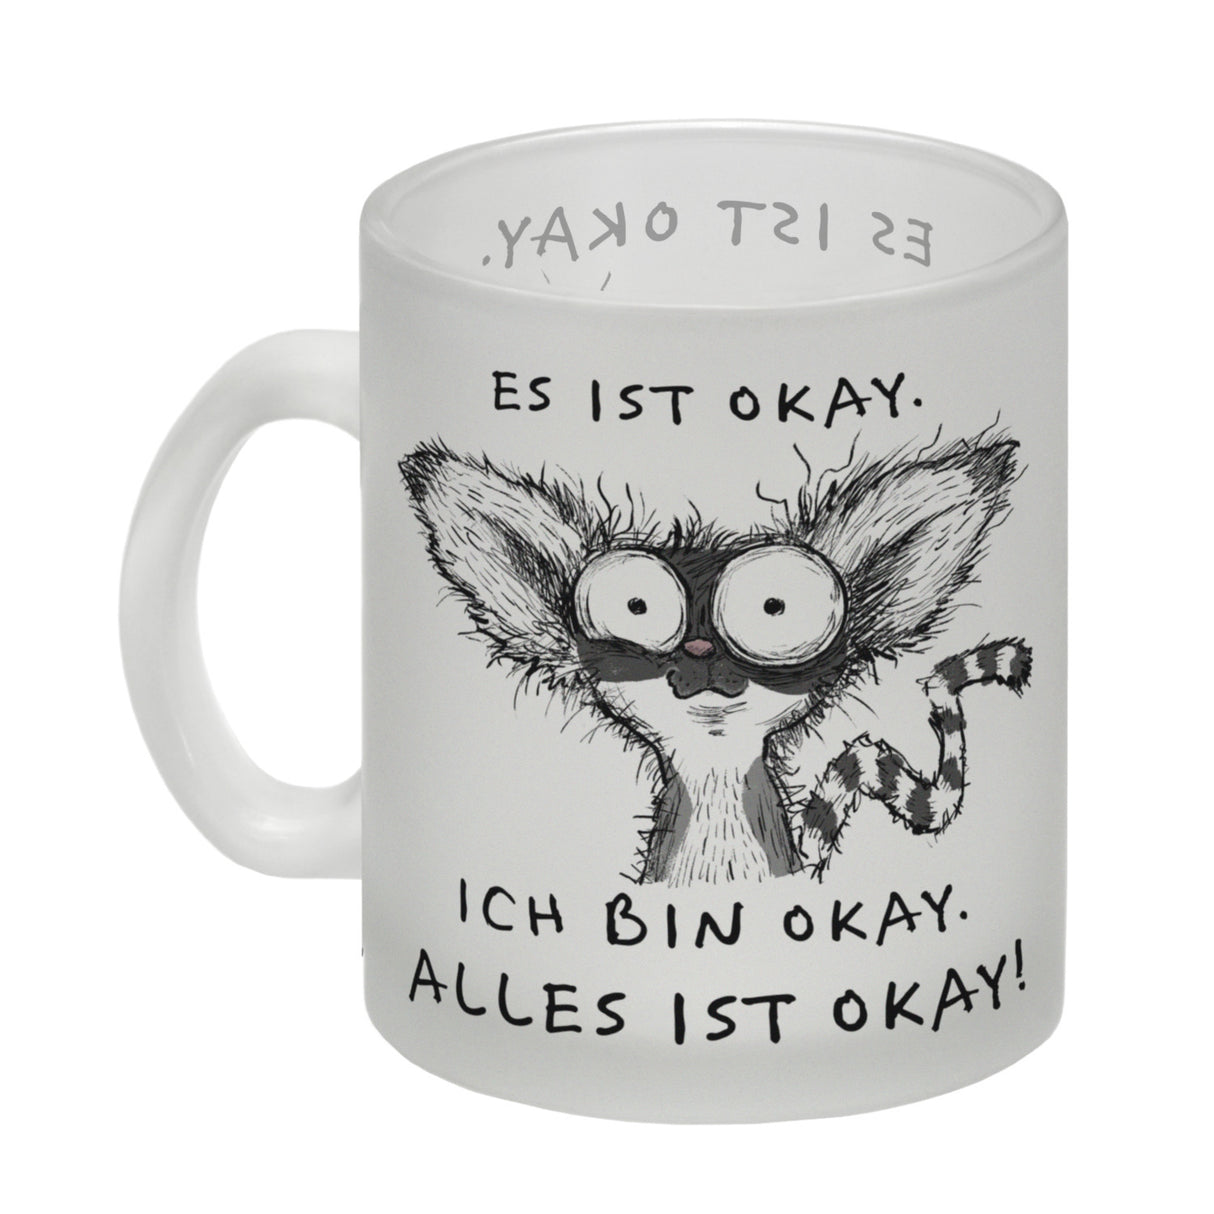 Verrückter Lemur Kaffeebecher mit Spruch Es ist okay Ich bin okay Alles ist okay